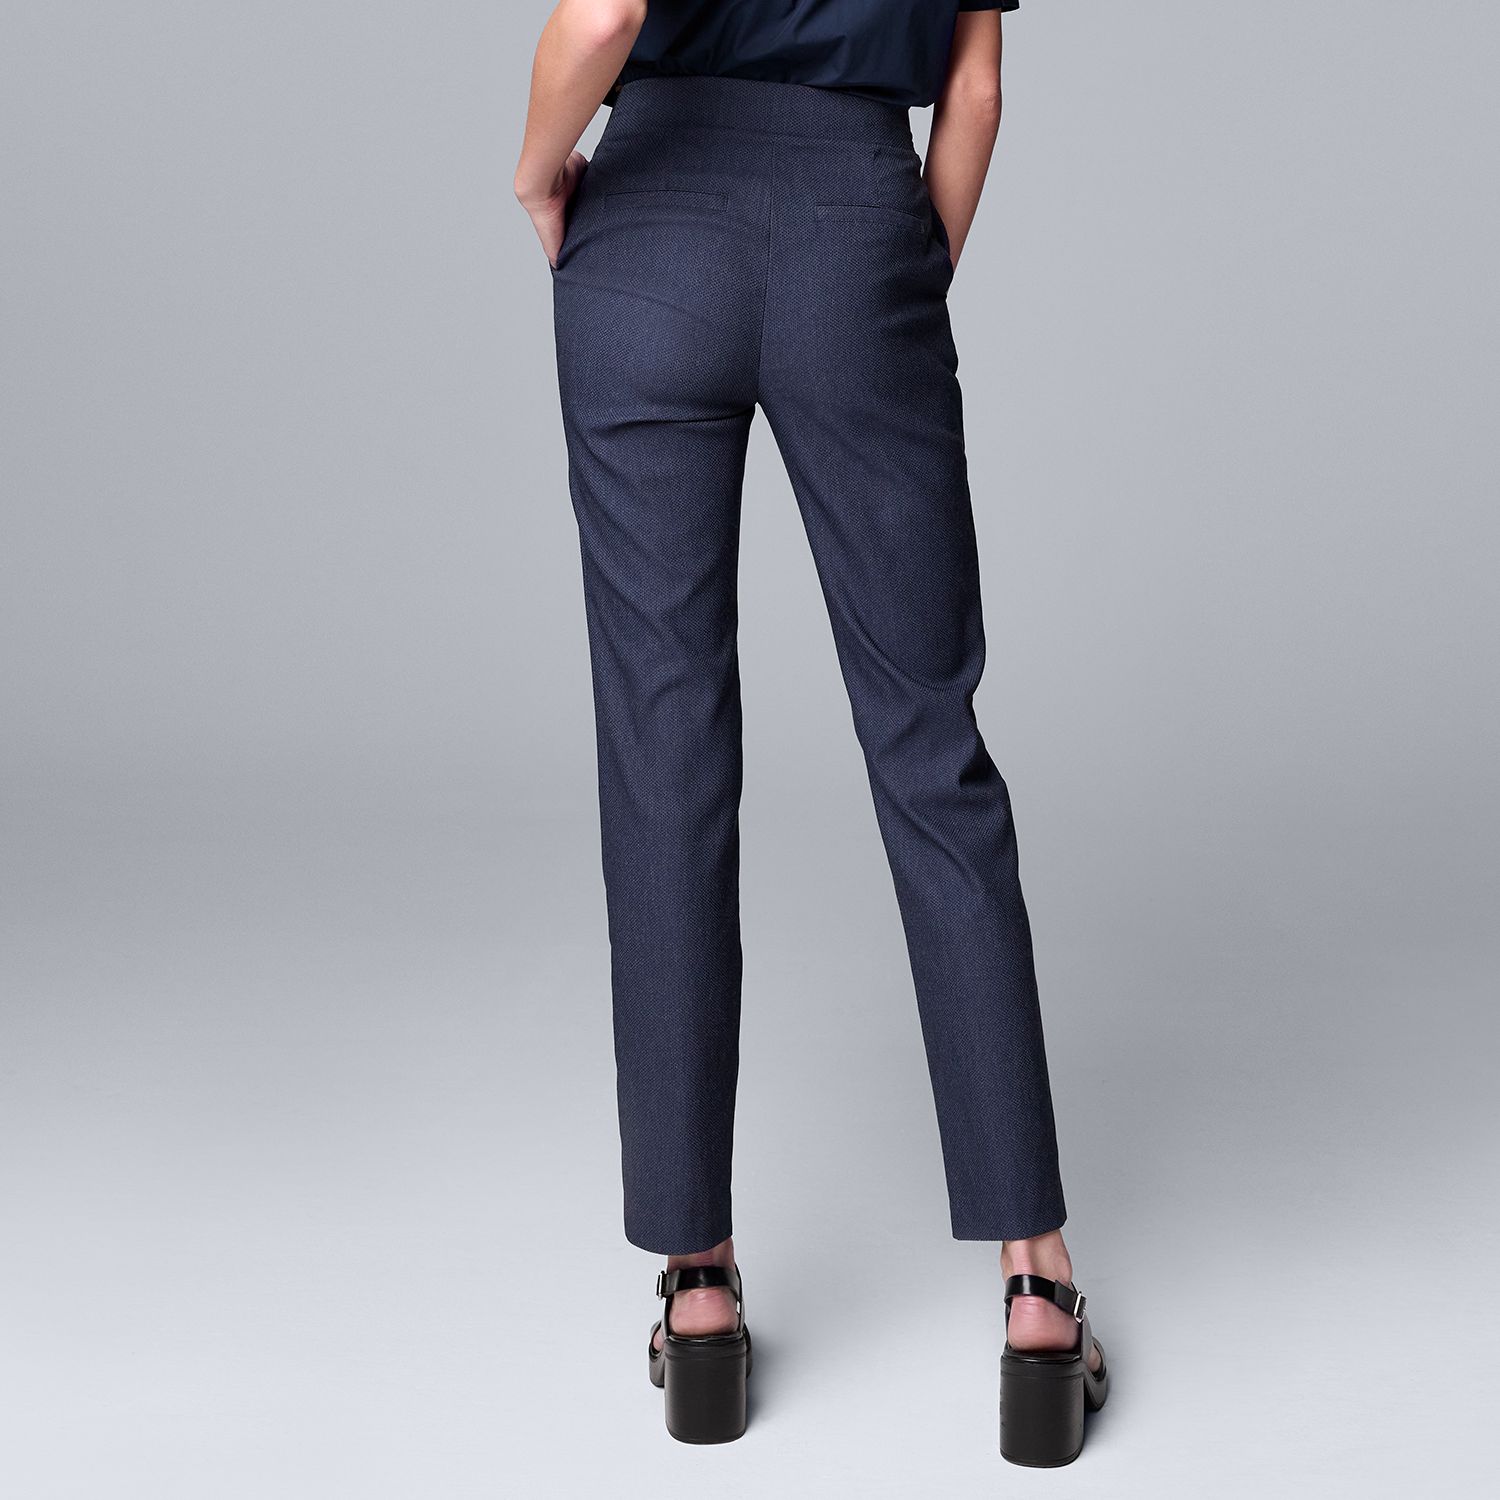 Simply Vera Vera Wang Polka Dots Navy Blue Active Pants Size L (Petite) -  54% off